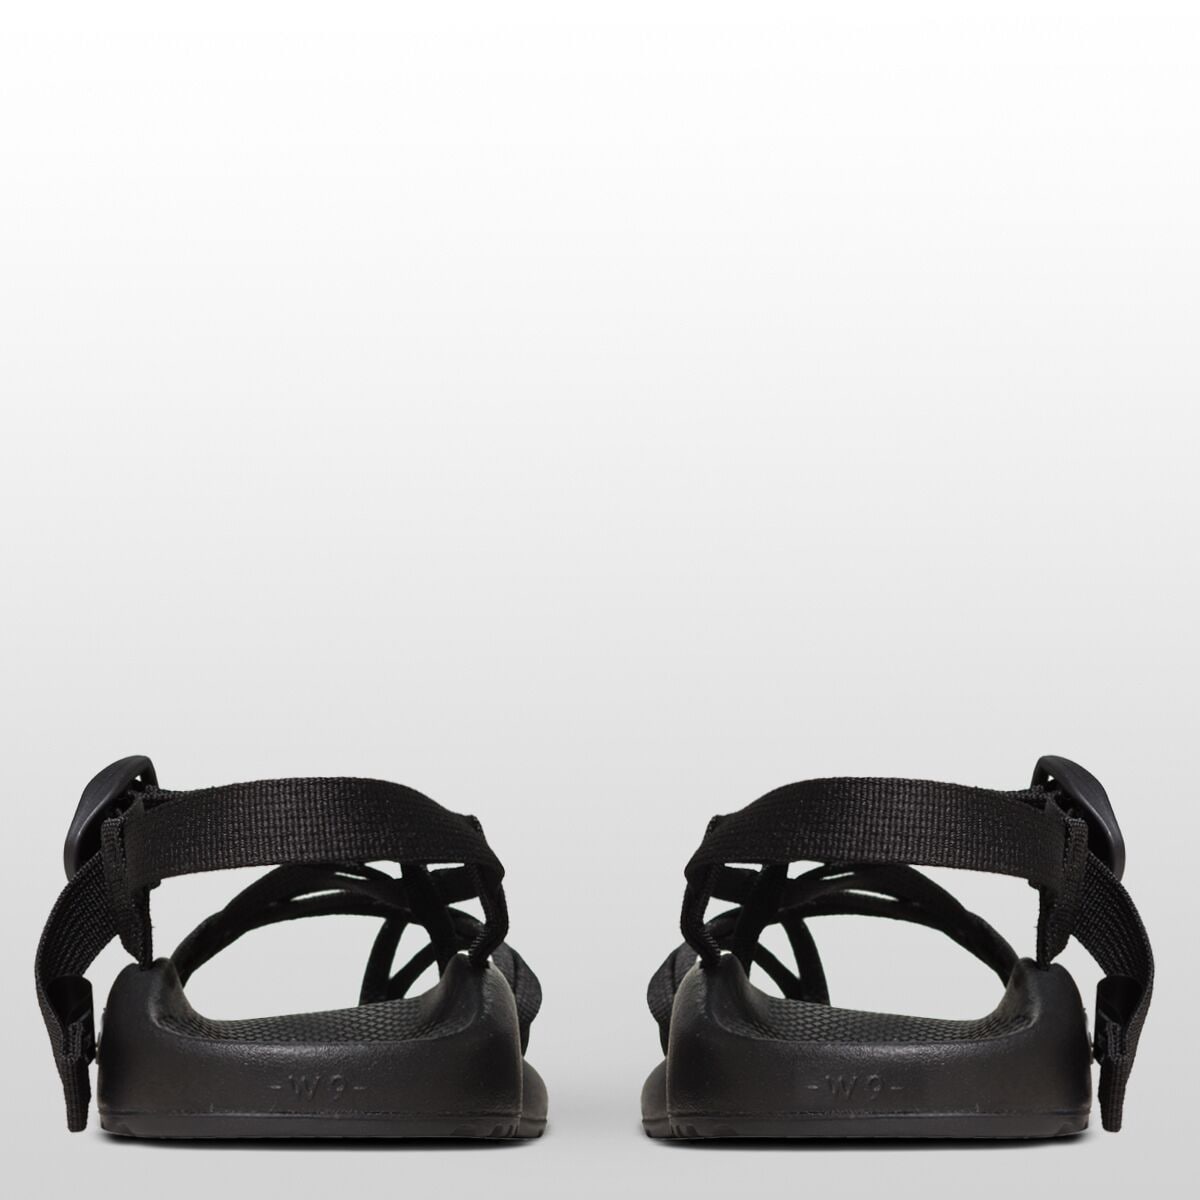 Chaco ZX/2 Classic Wide Sandal - Women's - Footwear